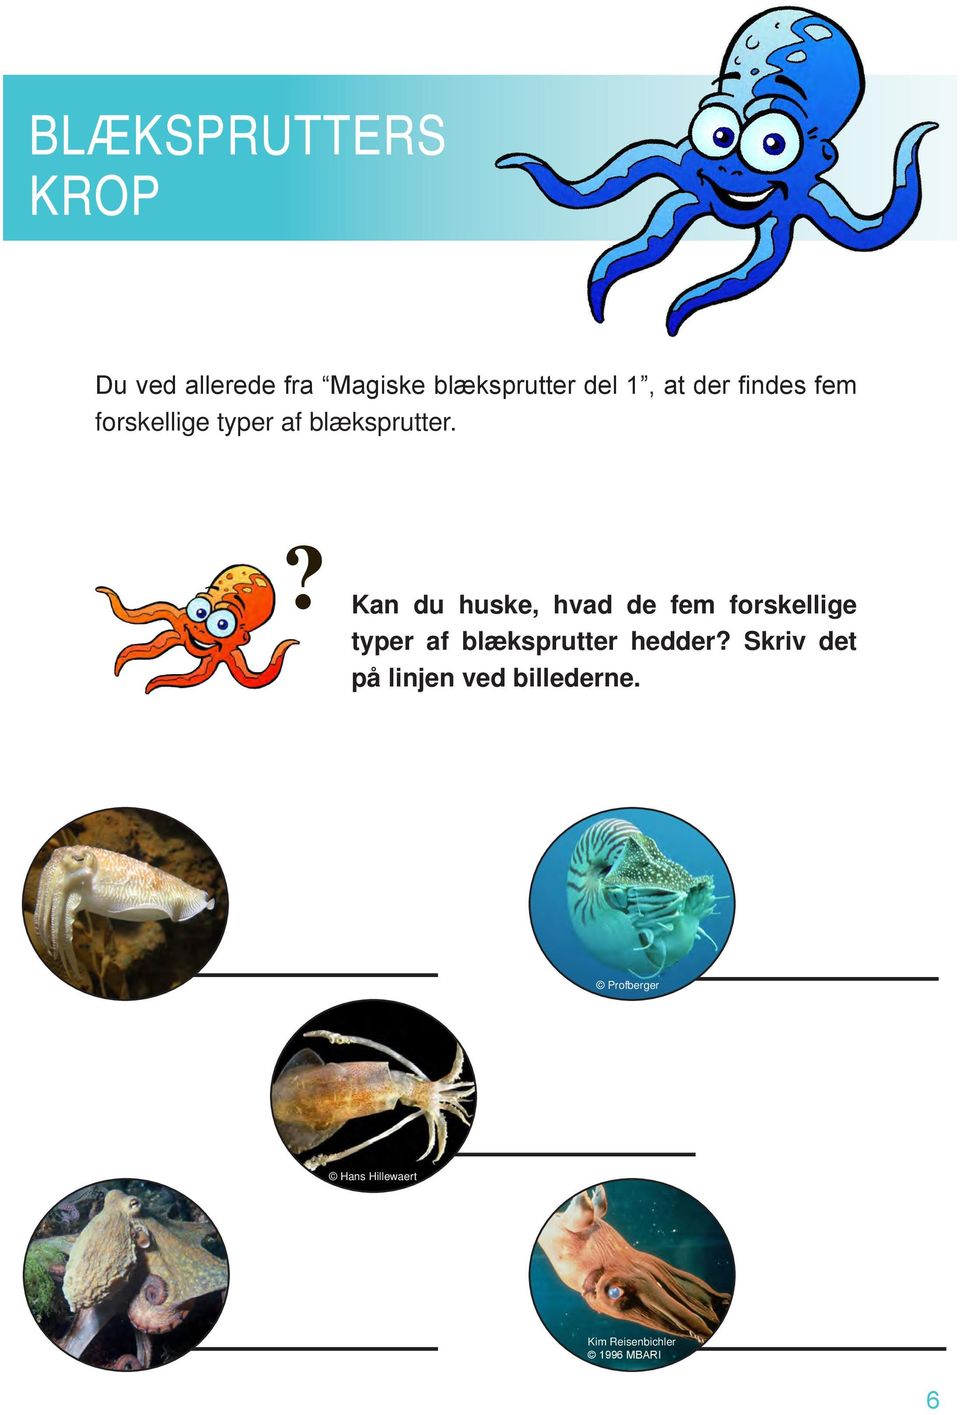 ? Kan du huske, hvad de fem forskellige typer af blæksprutter hedder?